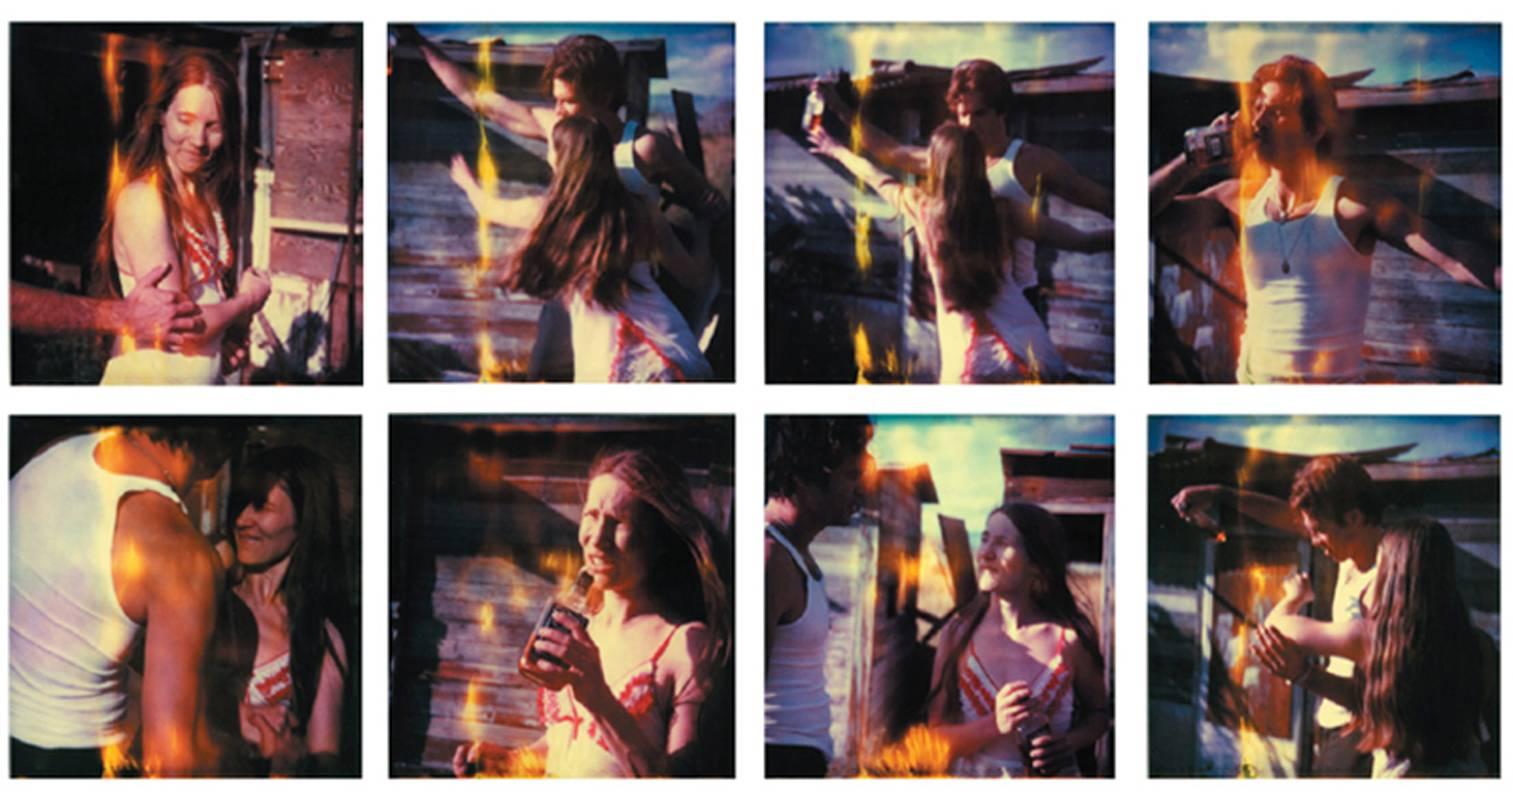 Stefanie Schneider Portrait Photograph - Whisky Dance I - Sidewinder - 8 pieces, analog, 82x80cm each